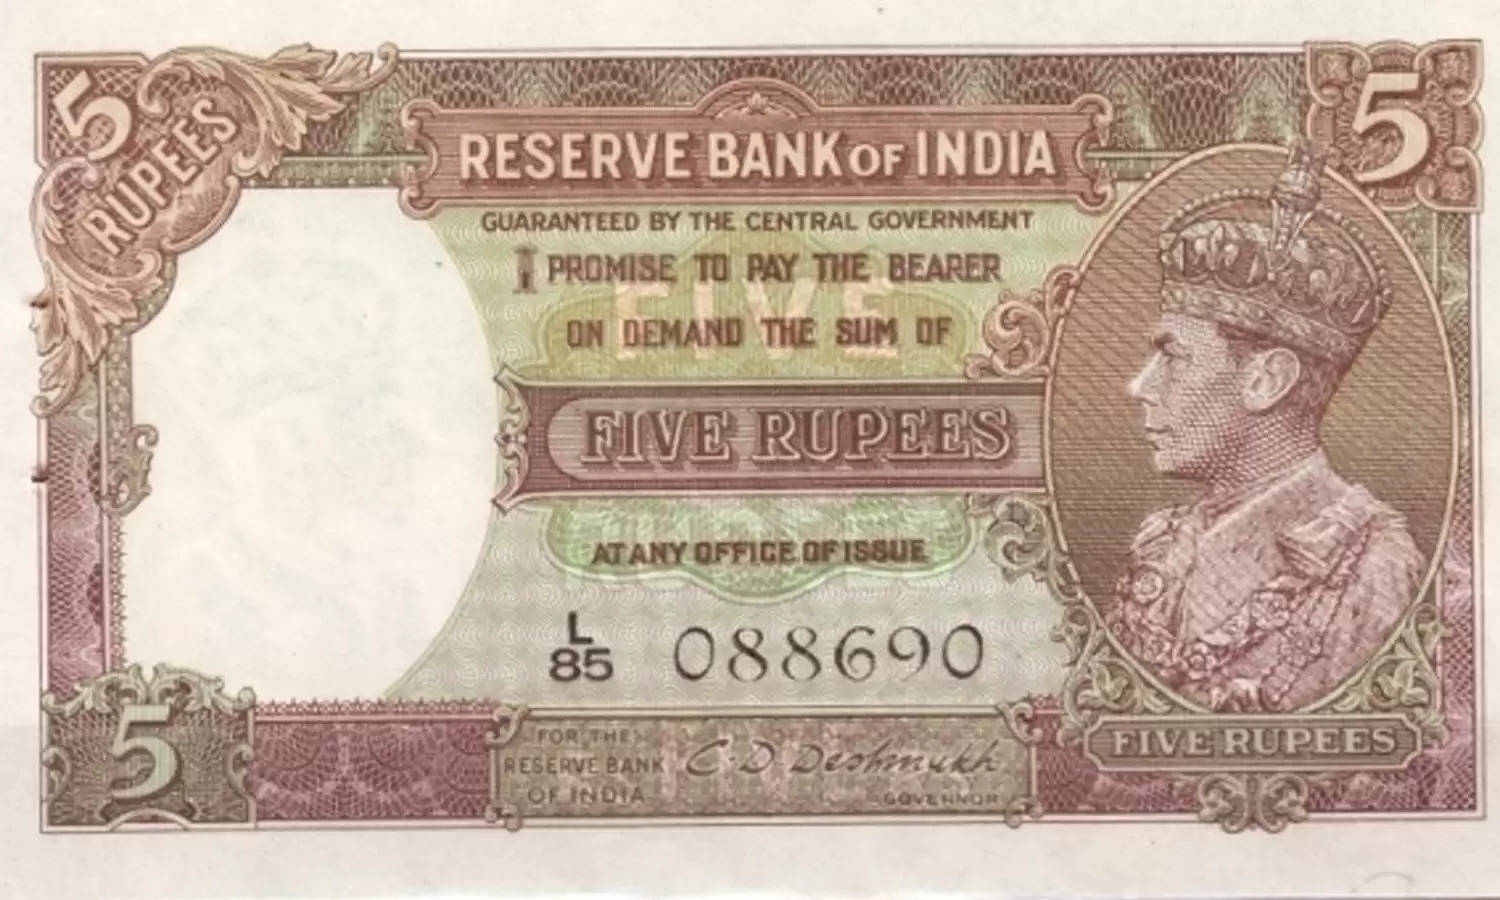 ₹5 नोट में है ये खासियत जो आप को घर बैठे बनाएगी अमीर, देखें फुल प्रोसेस